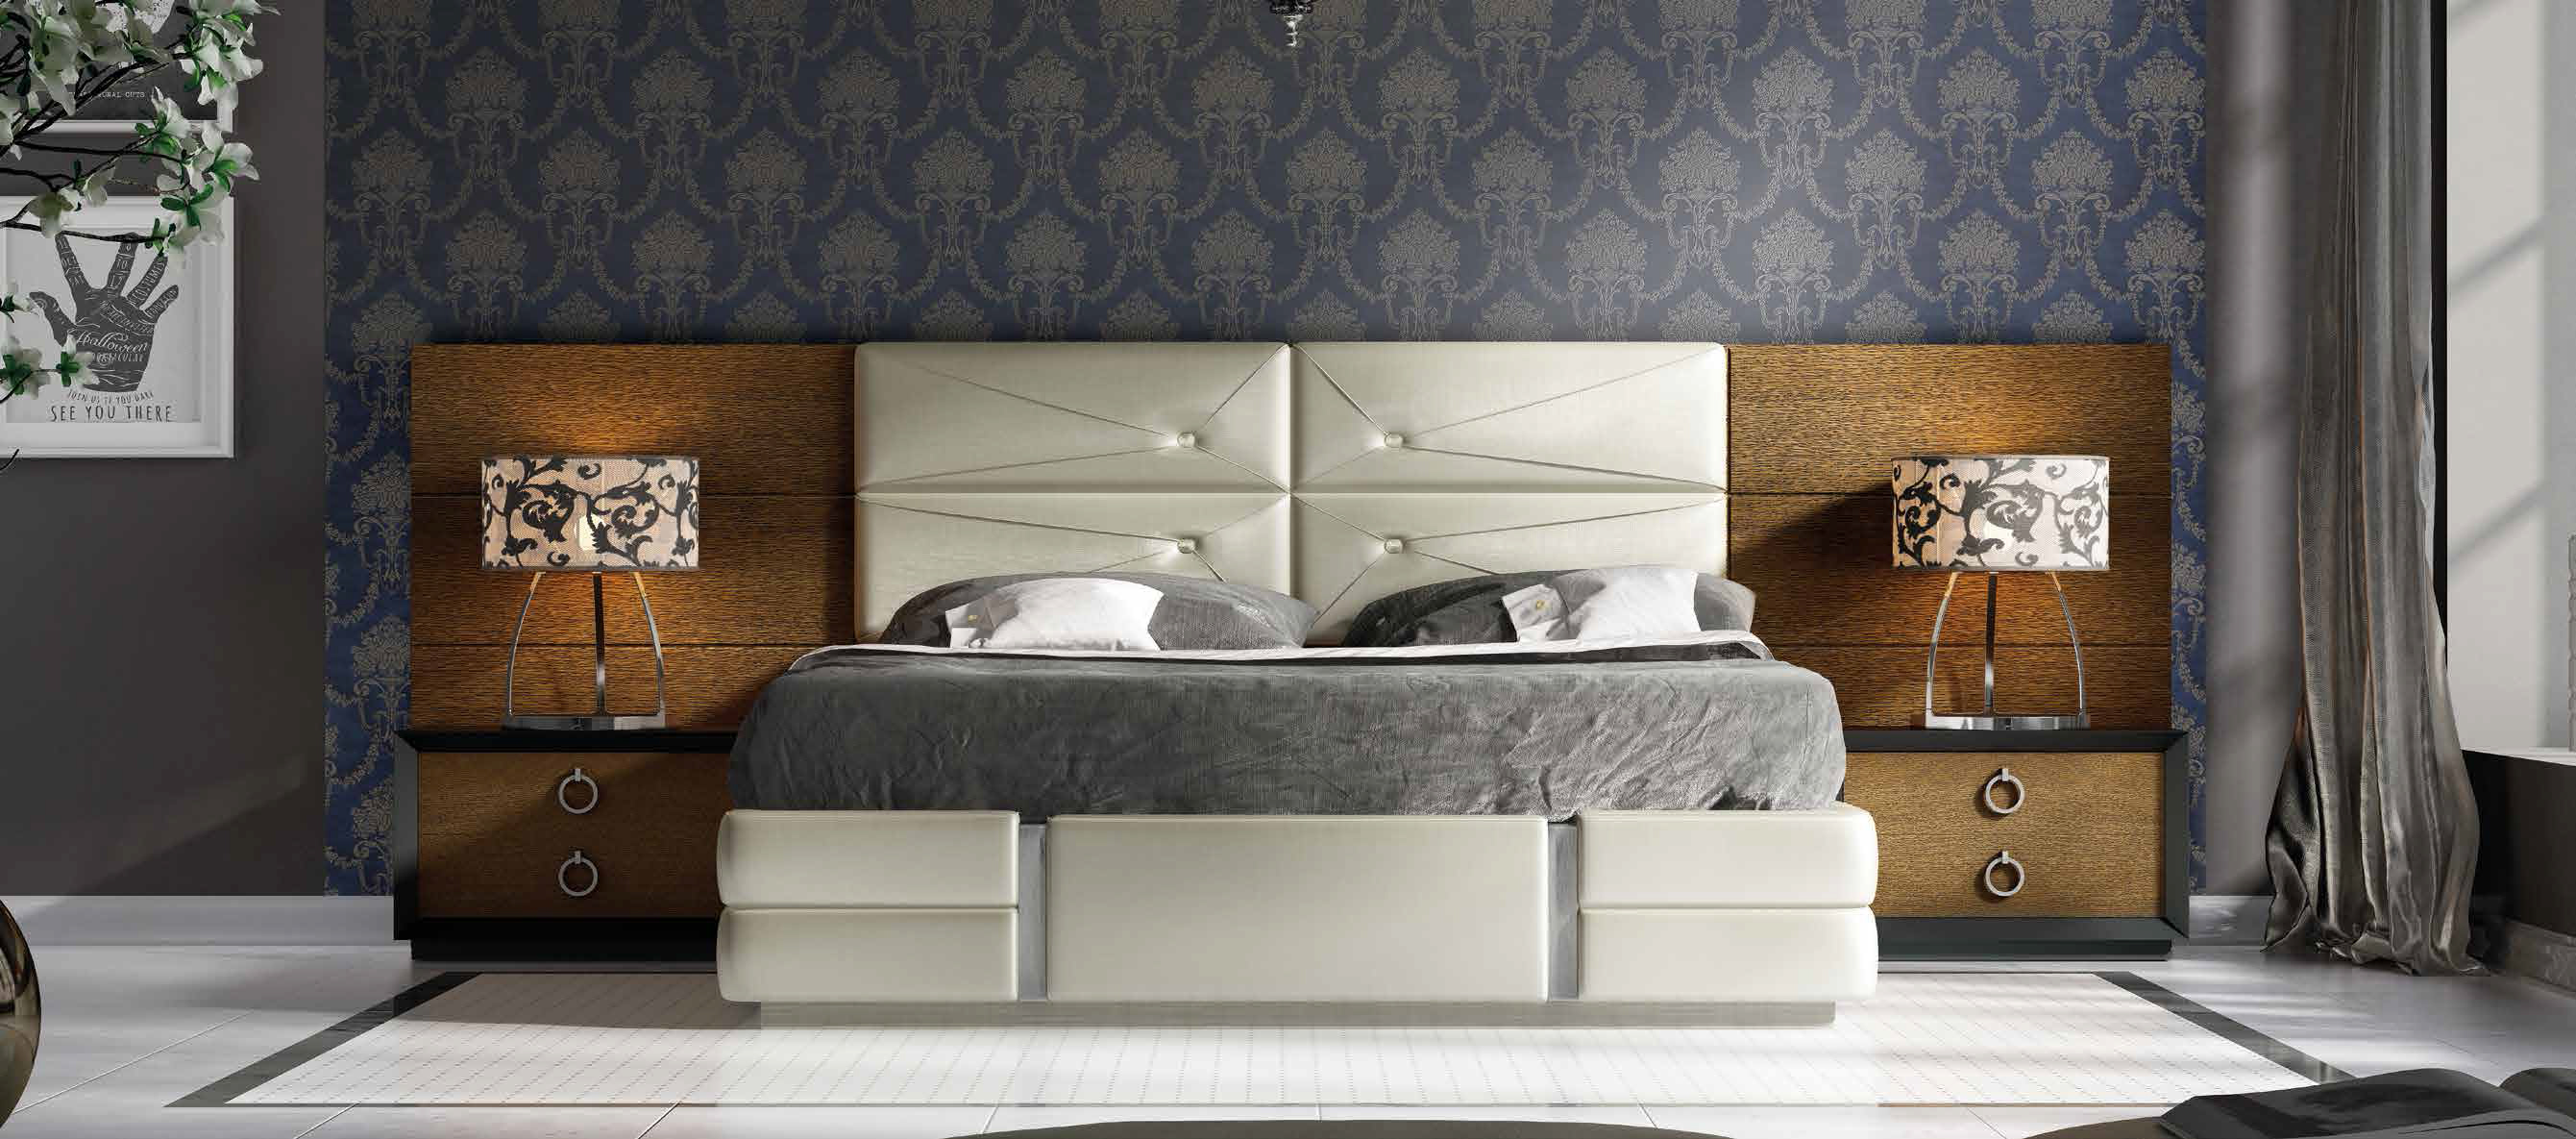 Brands Franco ENZO Bedrooms, Spain DOR 66